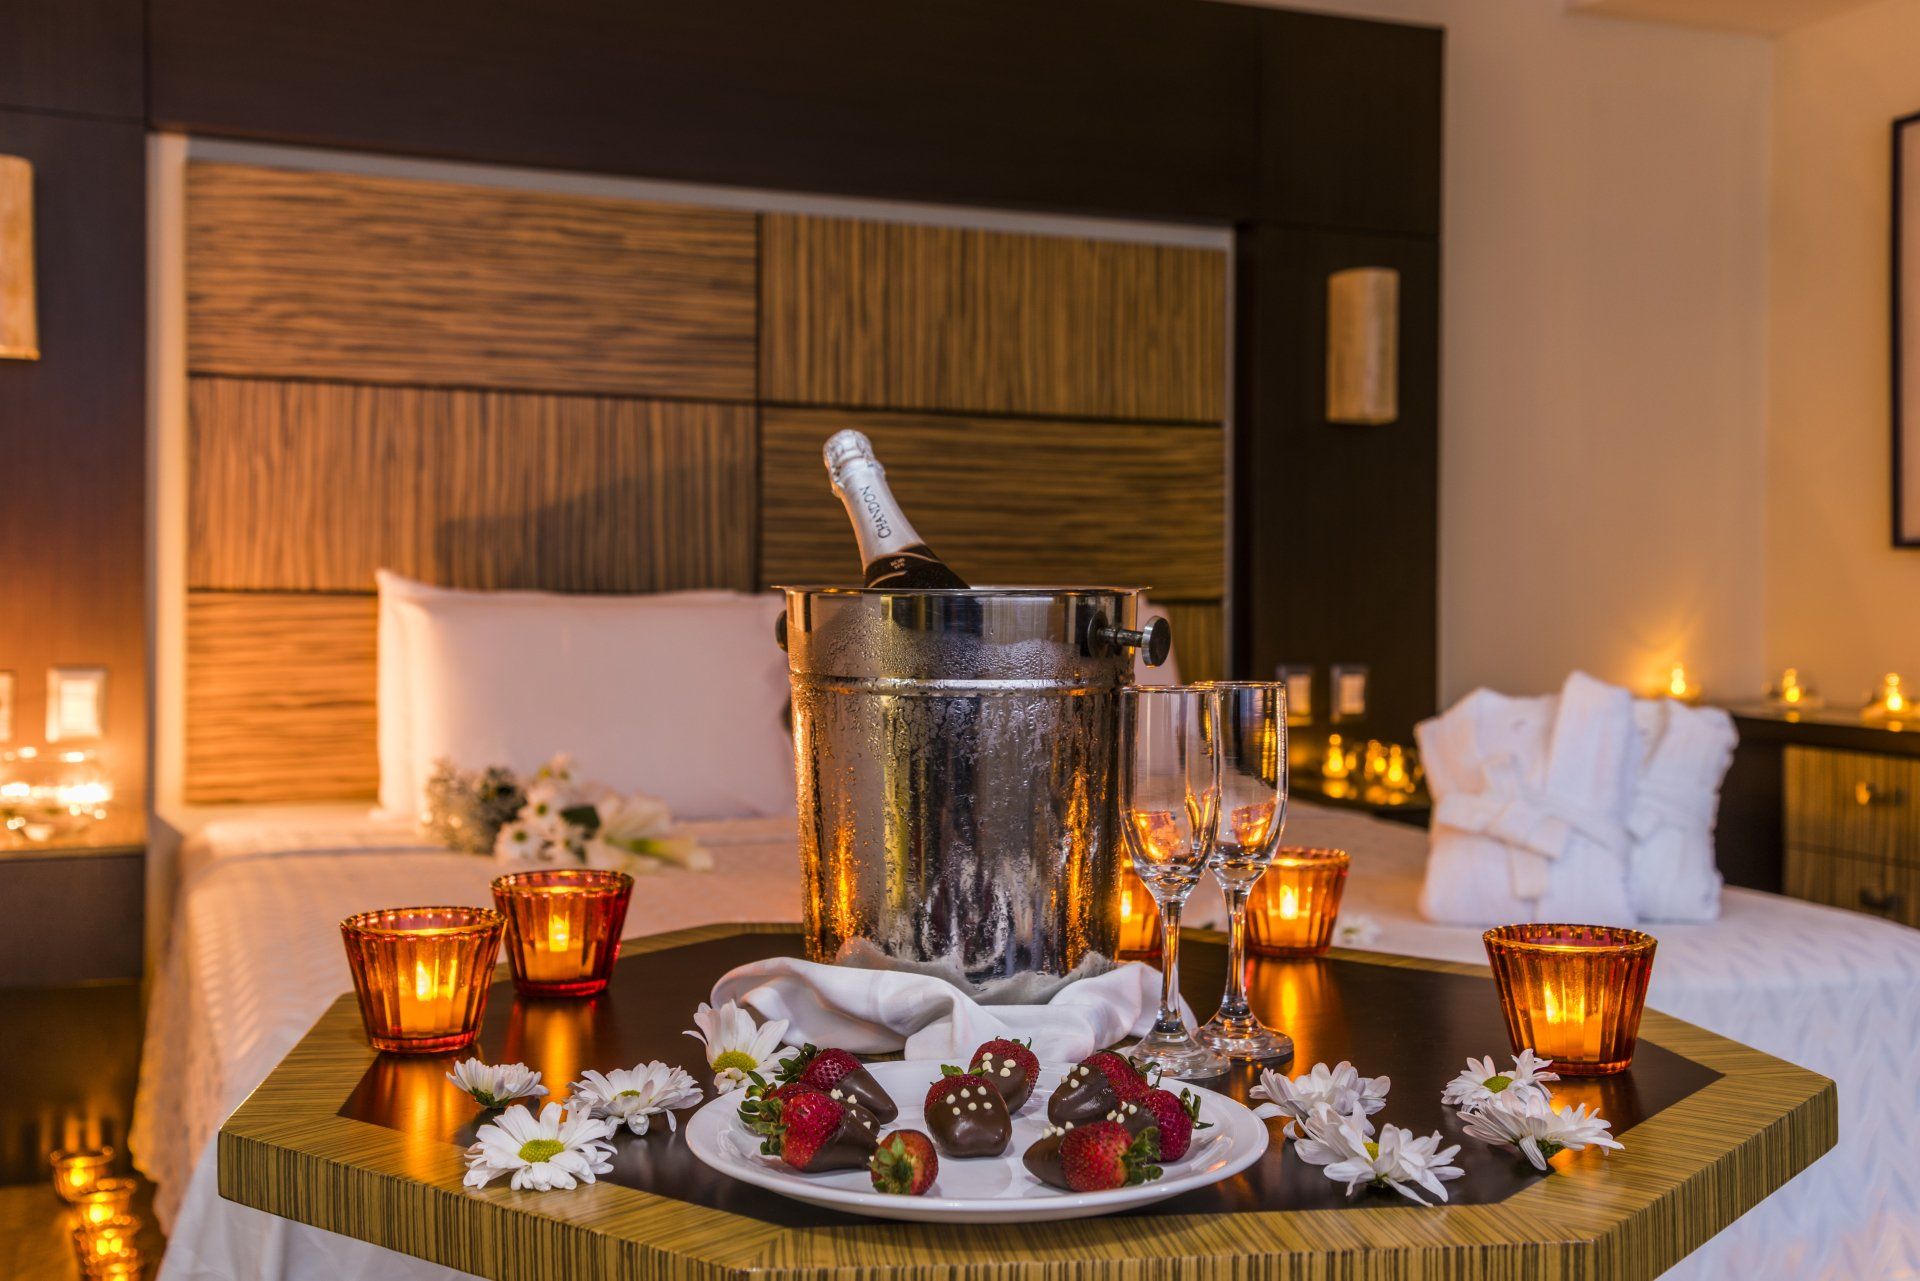 Una habitación de hotel con una mesa preparada para una cena romántica